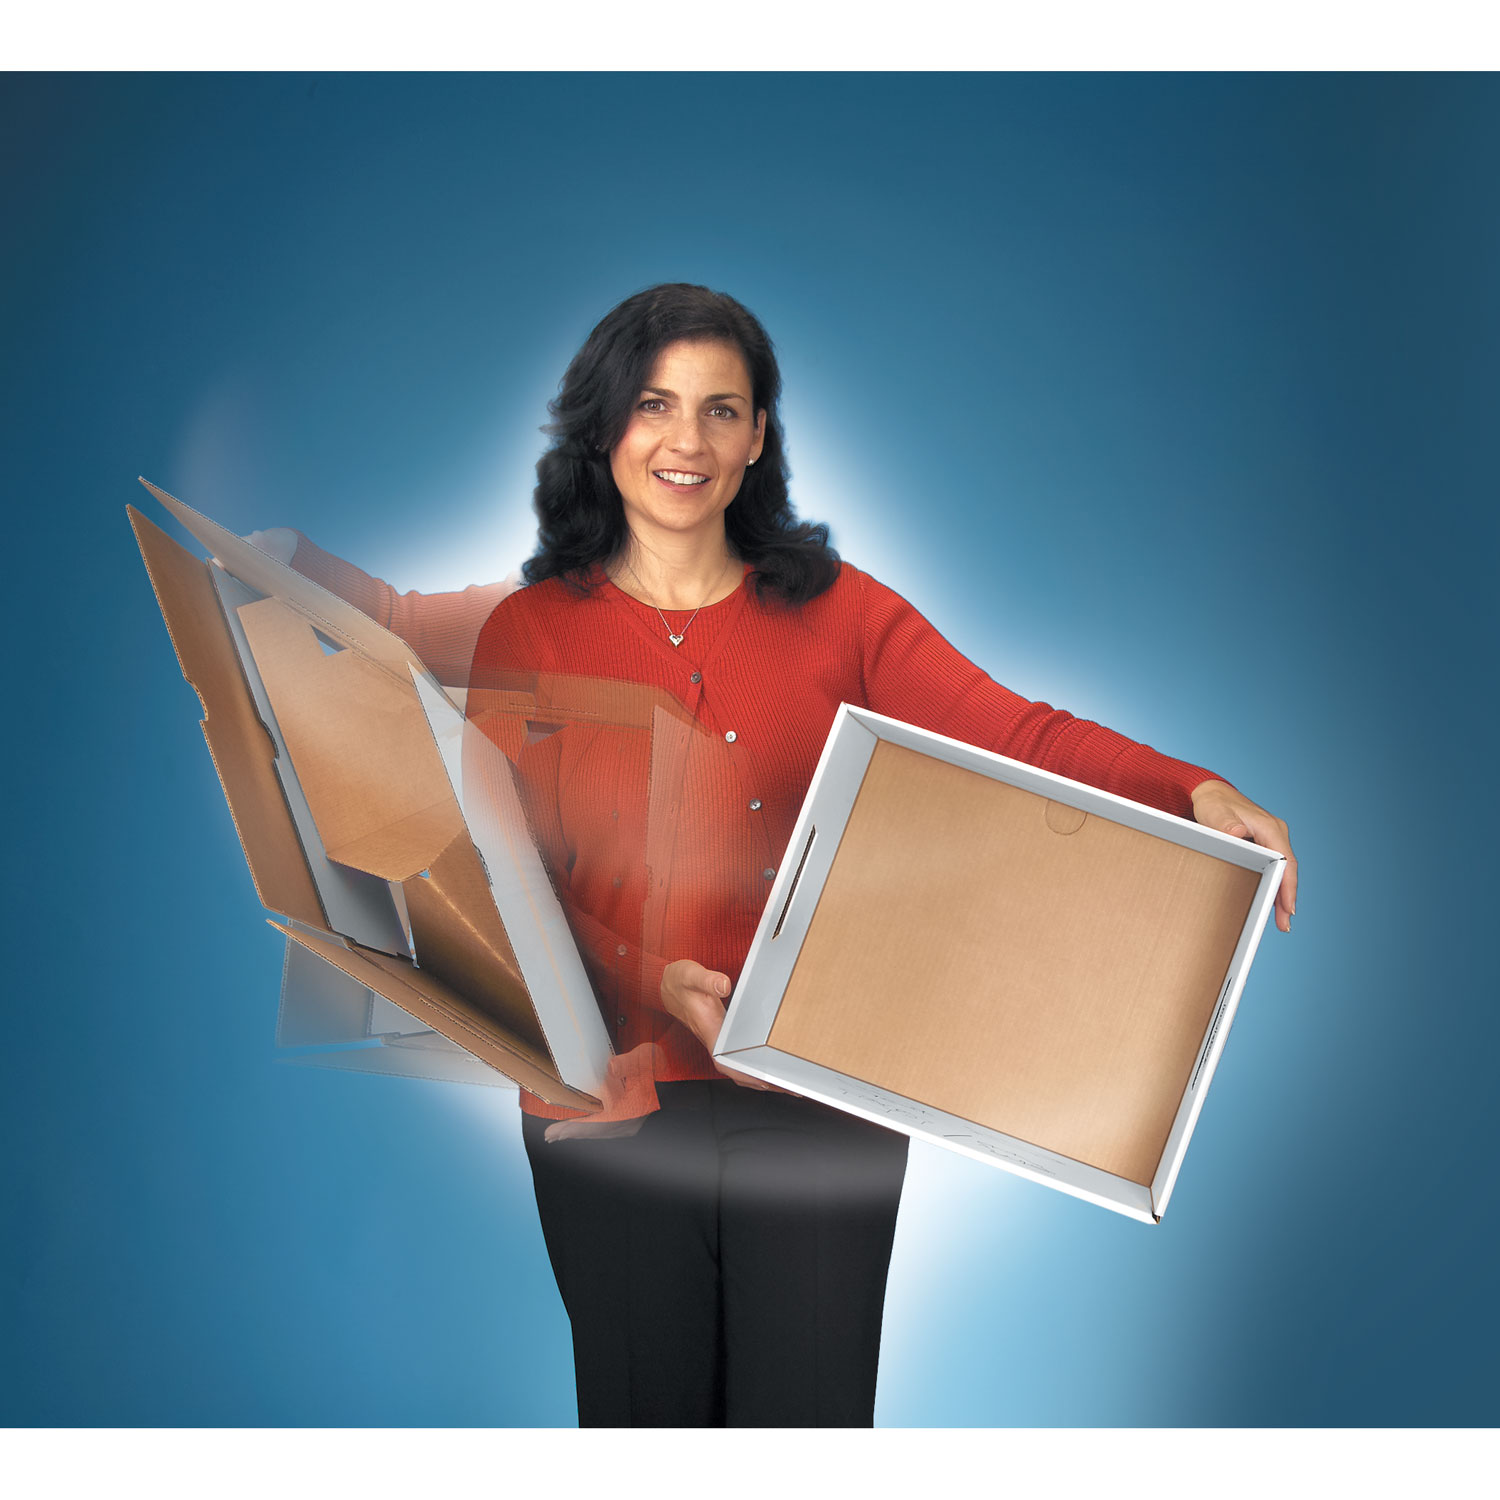 Buy R-Kive® File Storage Boxes - 12pk